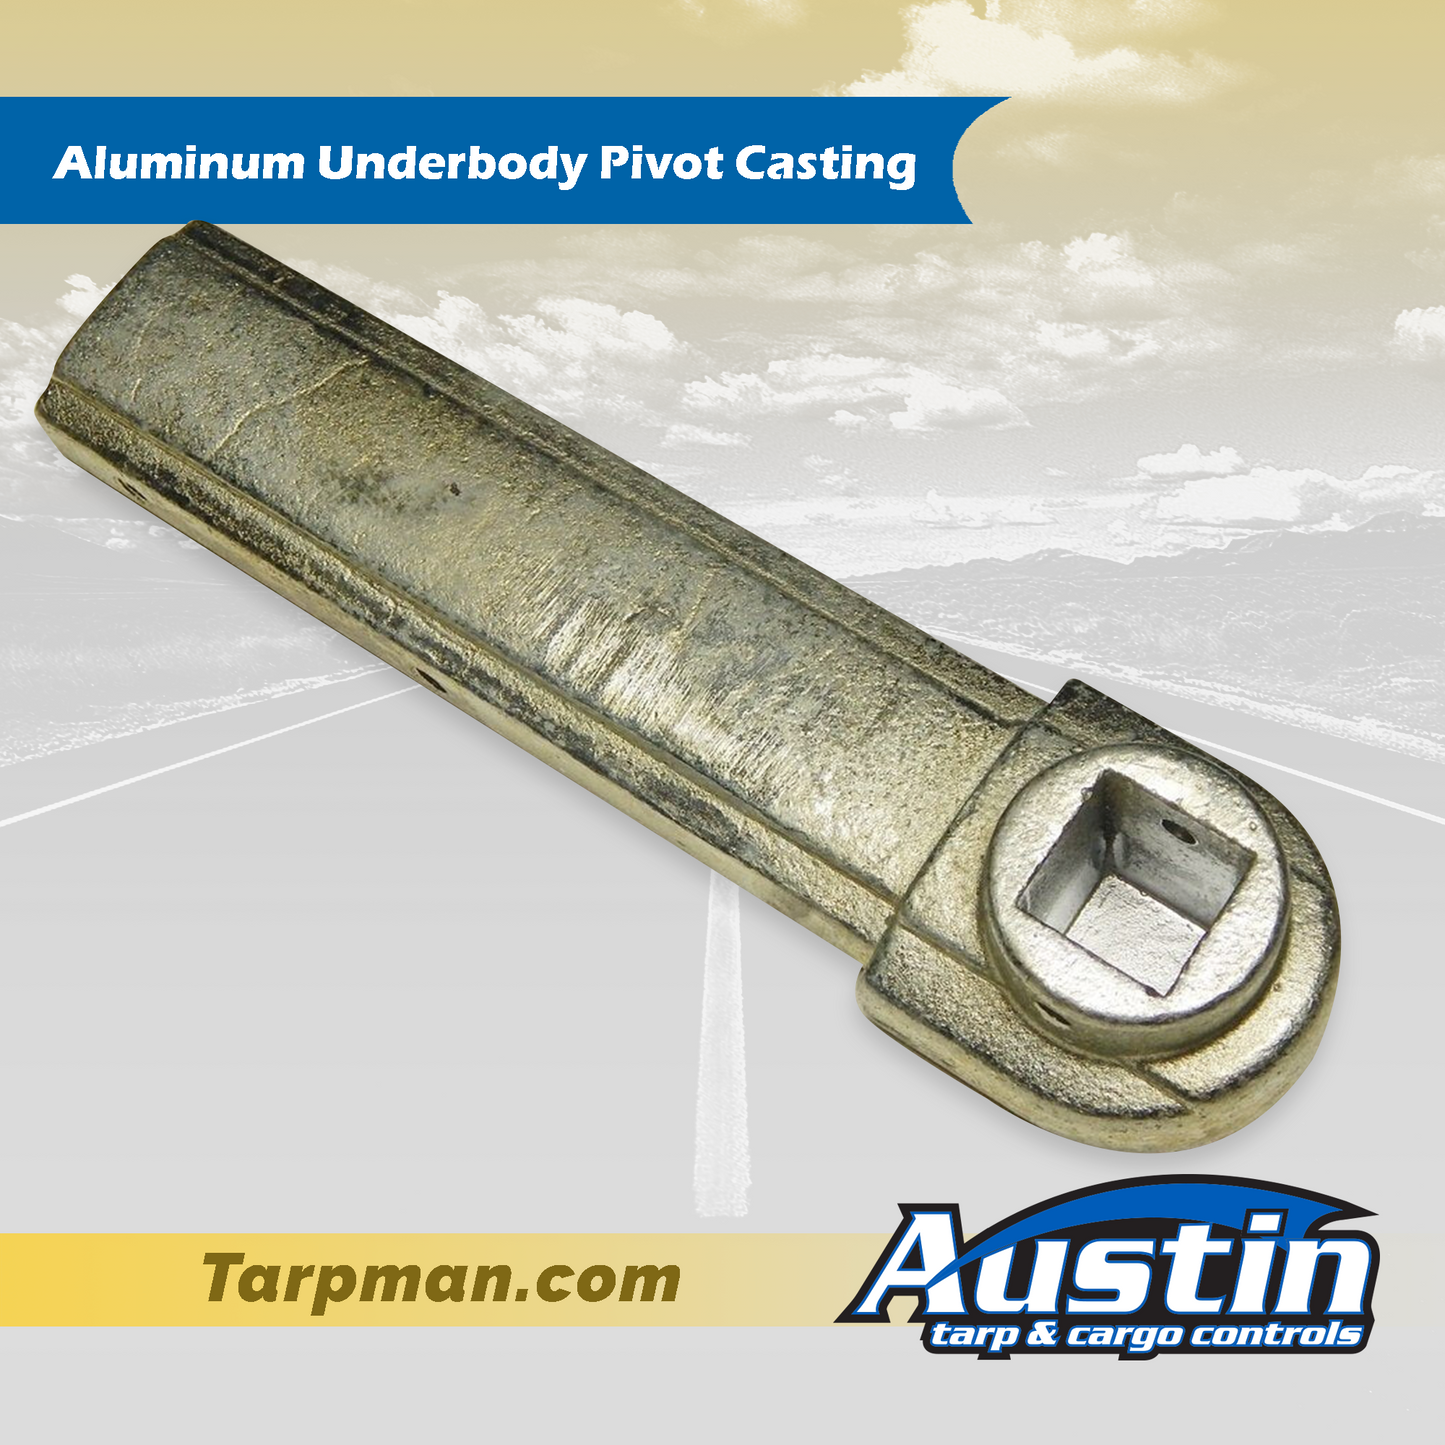 Aluminum Underbody Pivot Casting